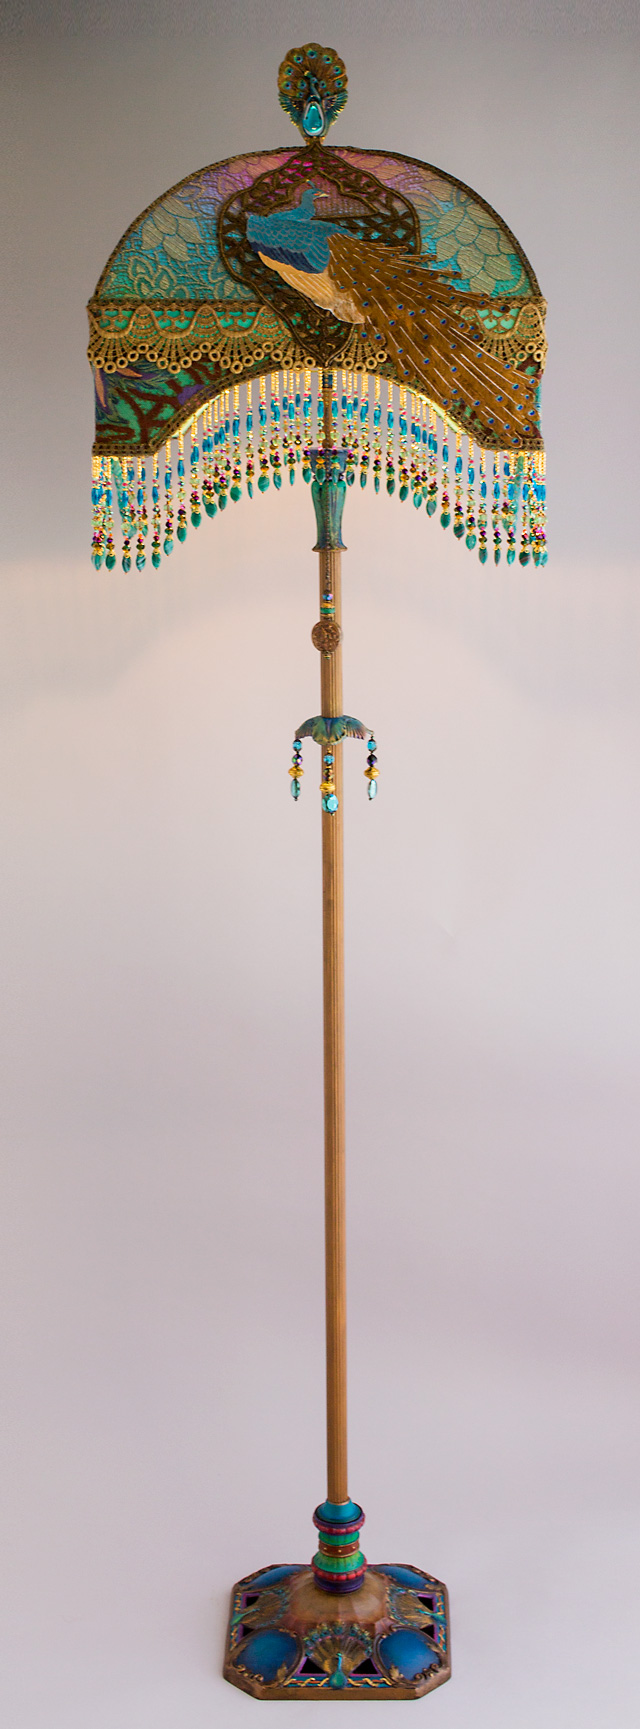 Detail of Peacock Lamp